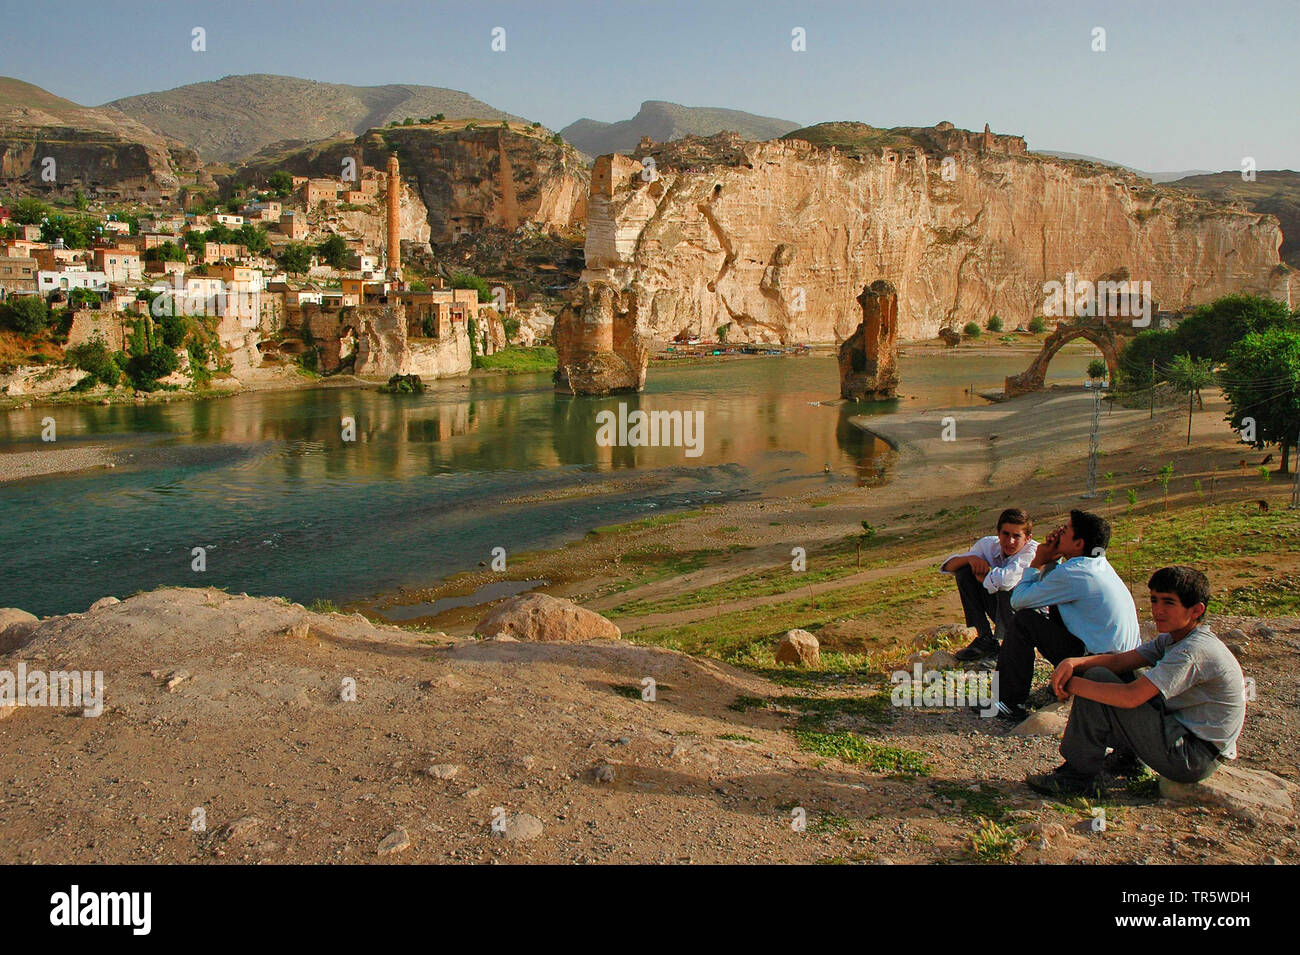 Hasankeyf am Tigris, Stadt wird durch die geplante Ilisu Staudammprojekt überflutet werden, Southeastern Anatolia Projekt, Türkei, Anatolien, Batman, Hasankeyf Stockfoto